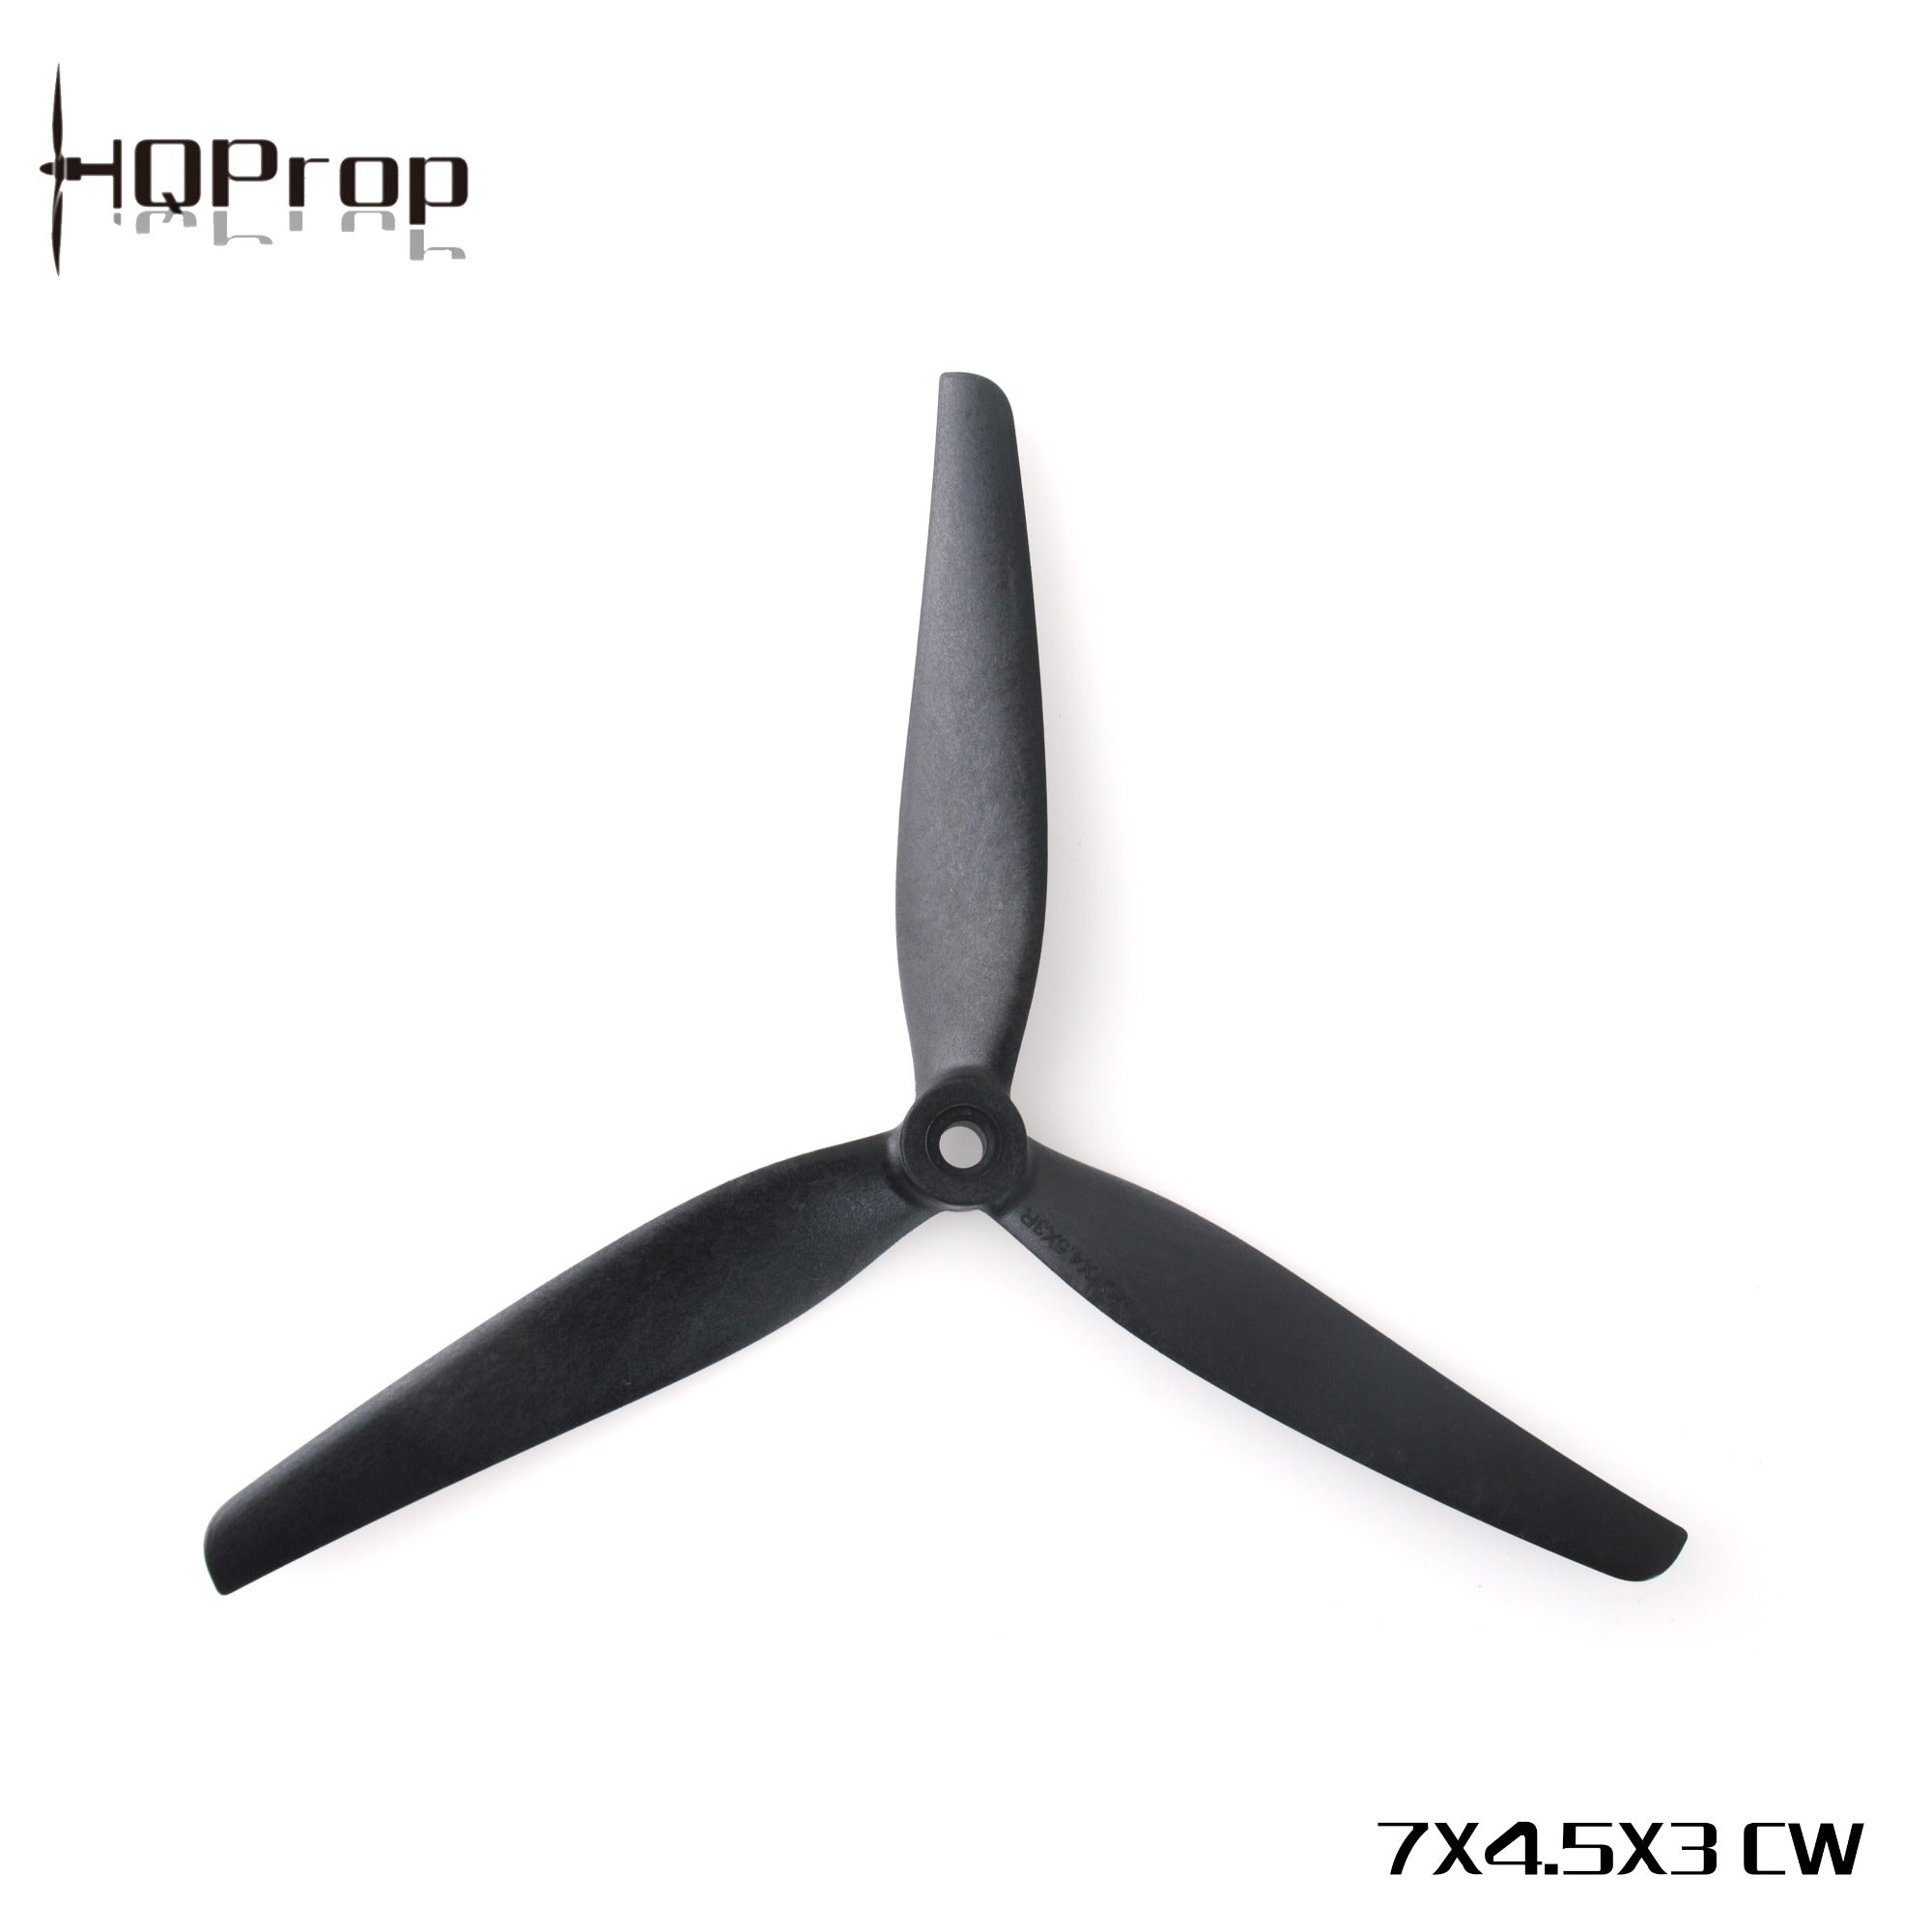 HQProp MacroQuad Prop 7X4.5X3R (CW) Black-Glass Fiber Nylon 1 - HQProp - Drone Authority